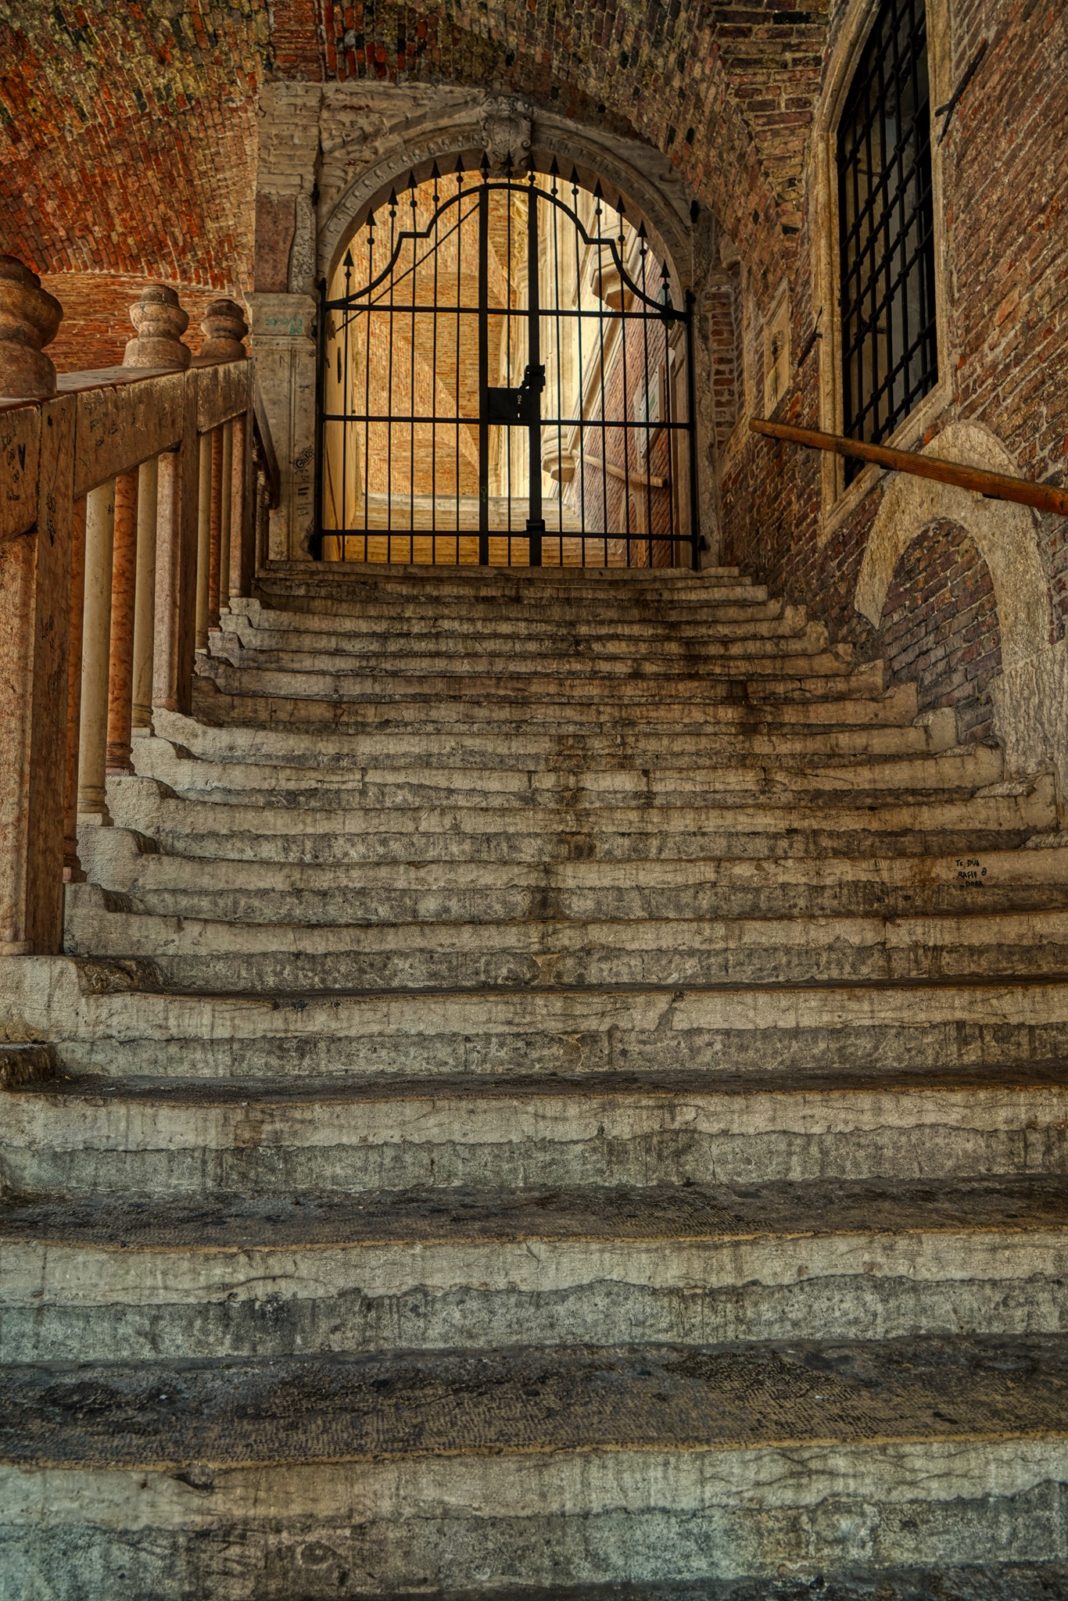 Al tempo della pestilenza a Vicenza fra il 1500 e il 1600 circa, si andava su per questa scala e a destra c'era una buca delle lettere per le “denonzie secrete in materia di sanità